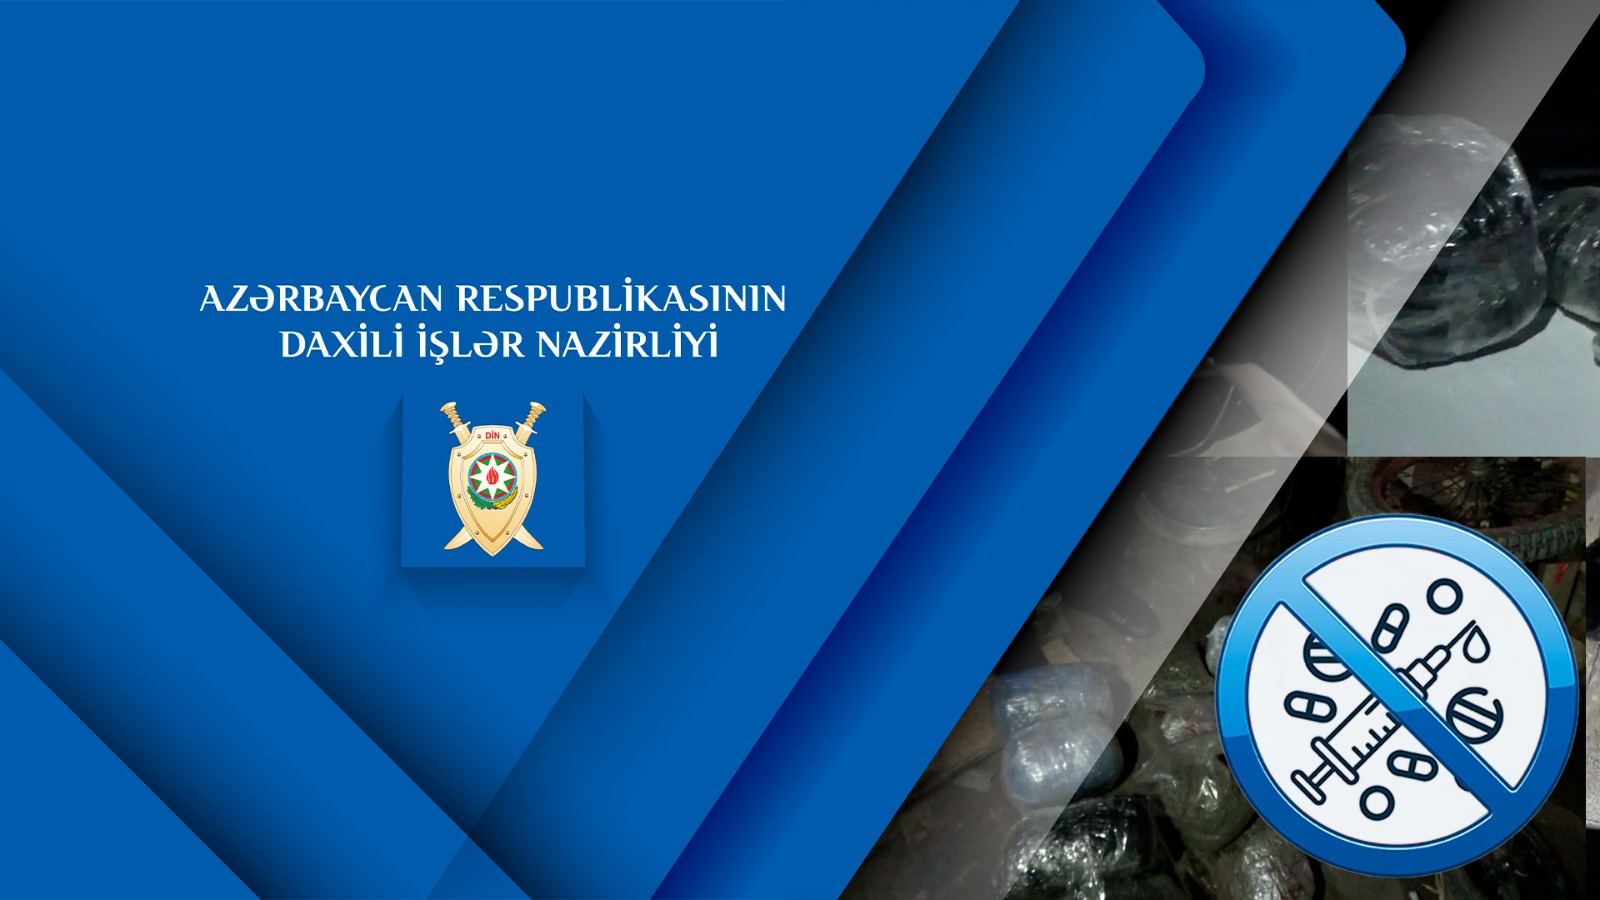 МВД Азербайджана провело операцию против иранских наркоторговцев в стране (ФОТО/ВИДЕО)